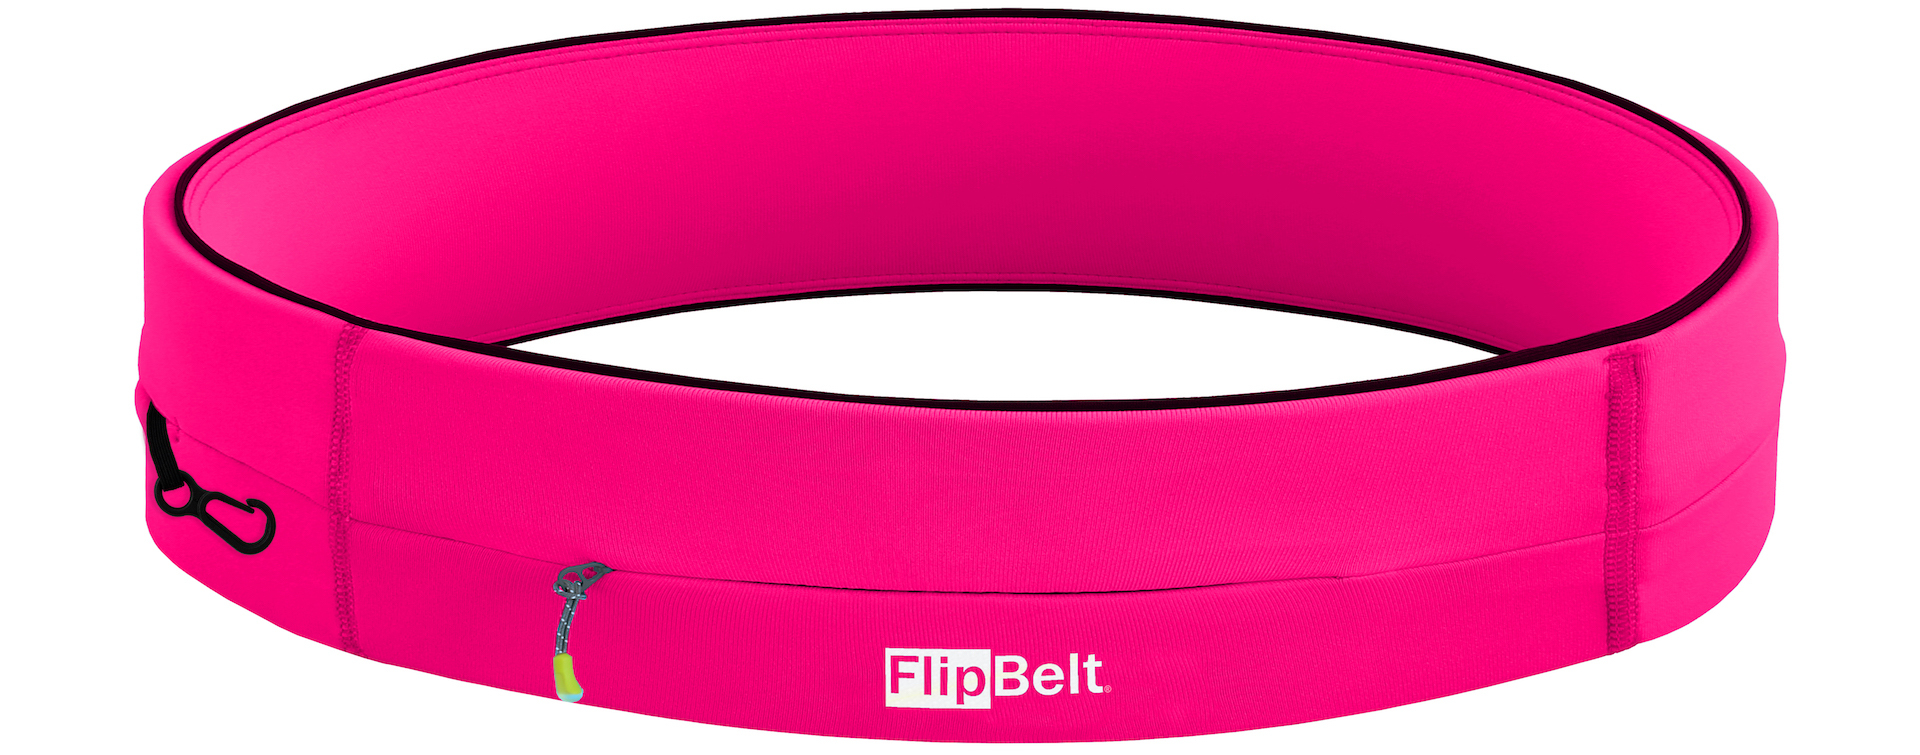 FlipBelt - Zipper - Running belt - Hardloop belt - Hardloop riem - Roze - M